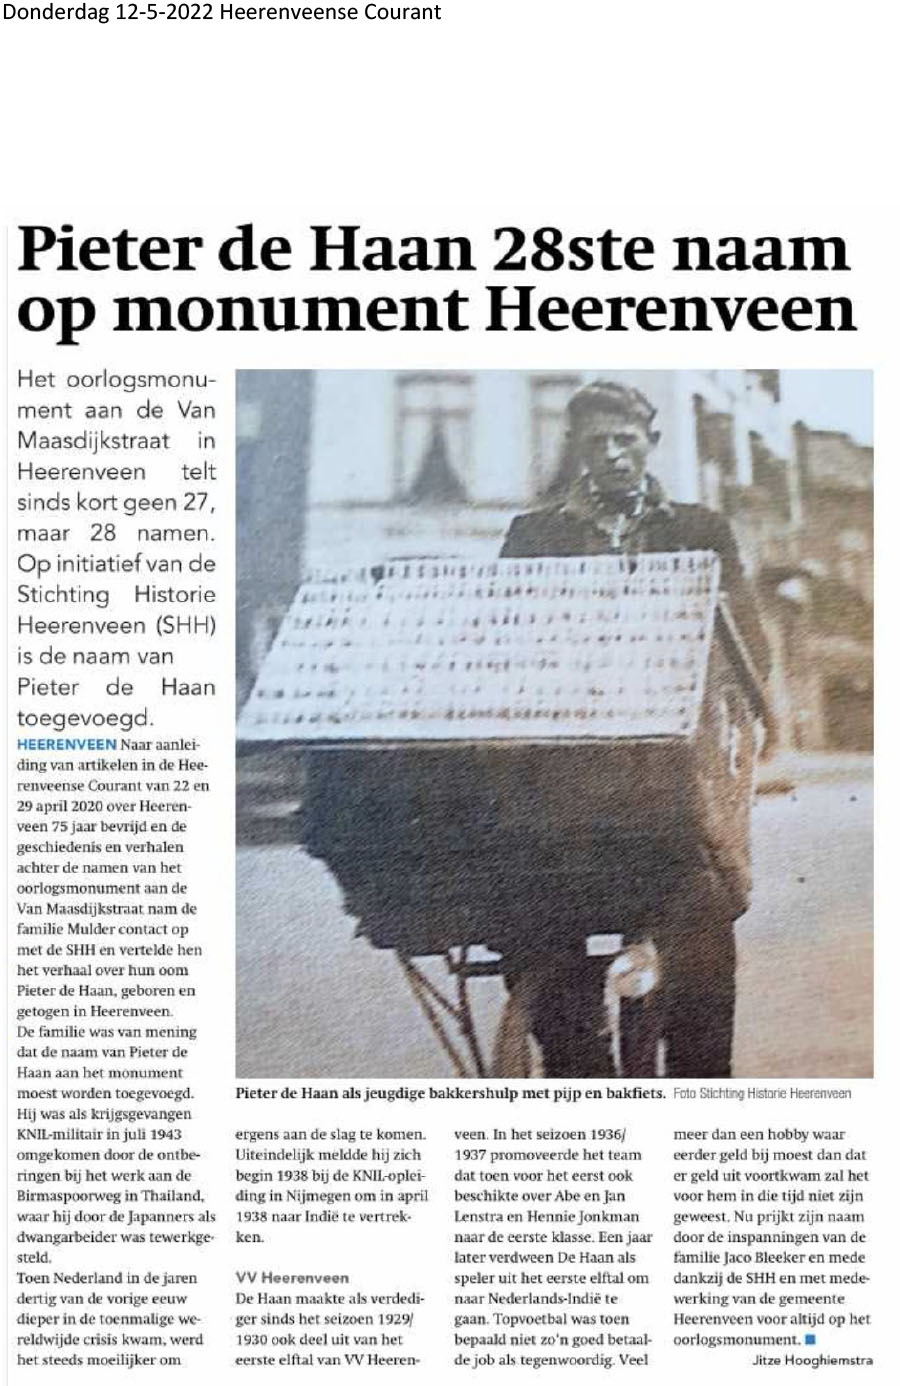 9933 2022 05 12 Pieter de Haan 28ste naam op monument Heerenveen